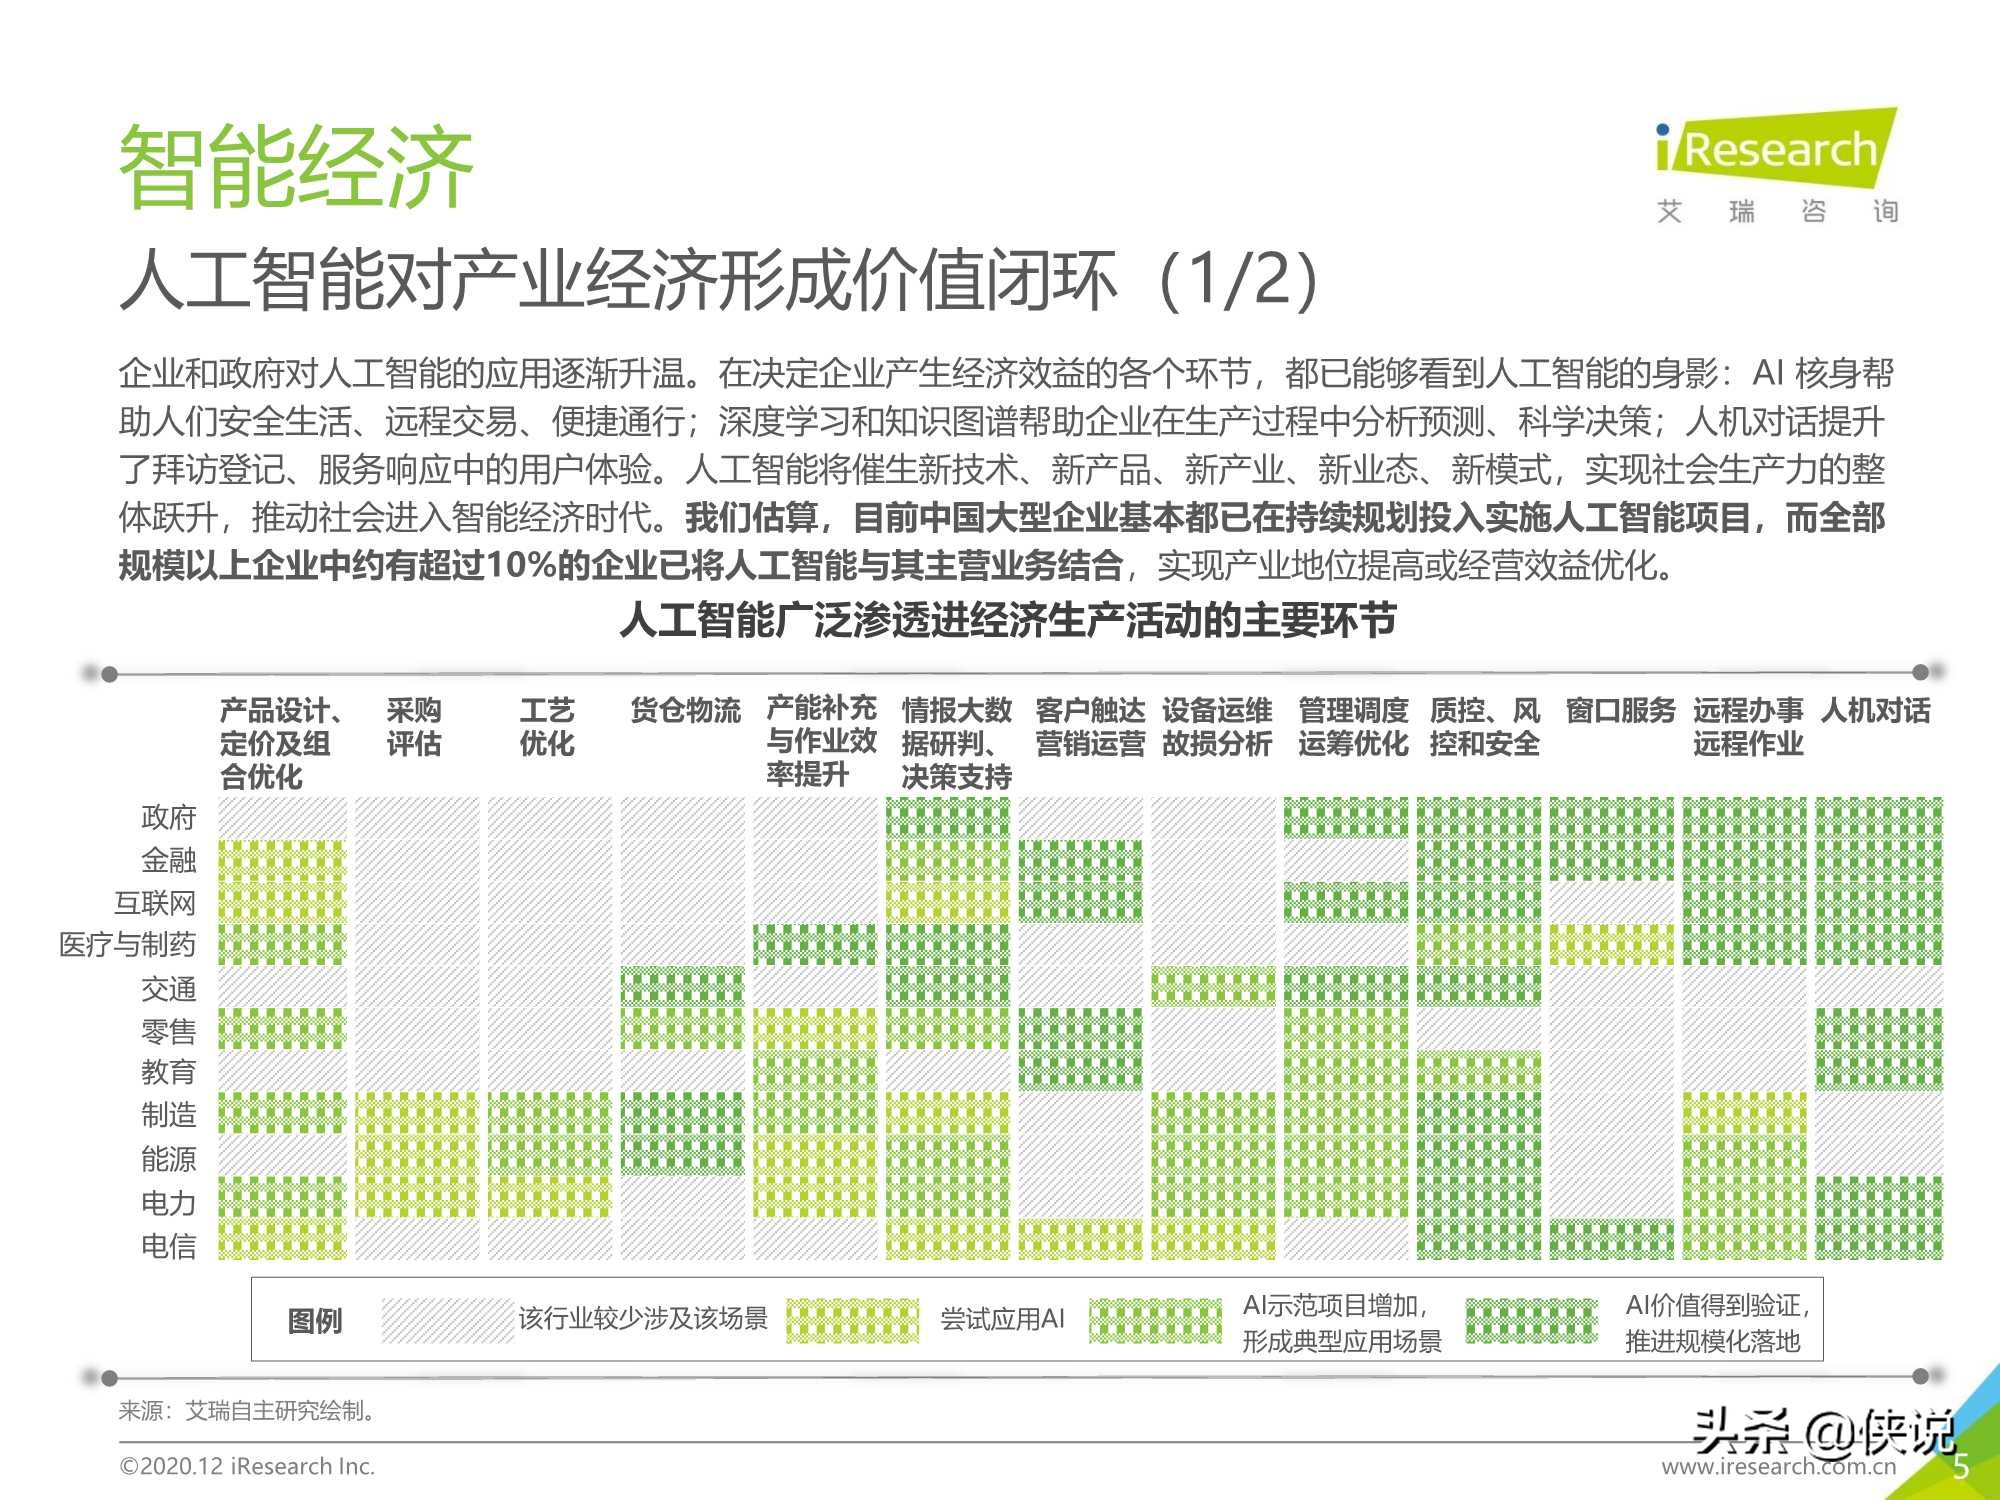 103页｜2020年中国人工智能产业研究报告（艾瑞）